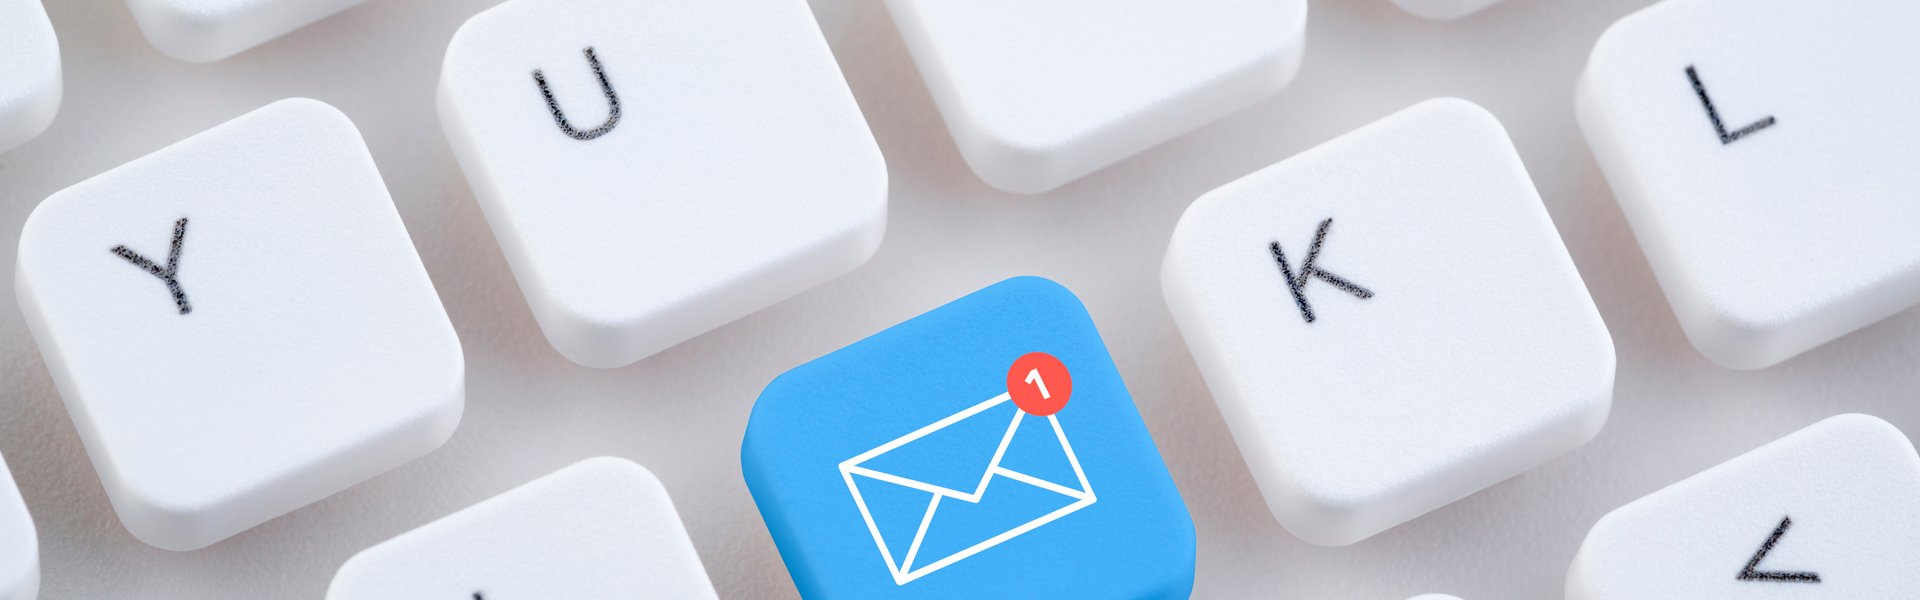 Tastatur mit blauer Taste, die ein E-Mail Symbol zeigt